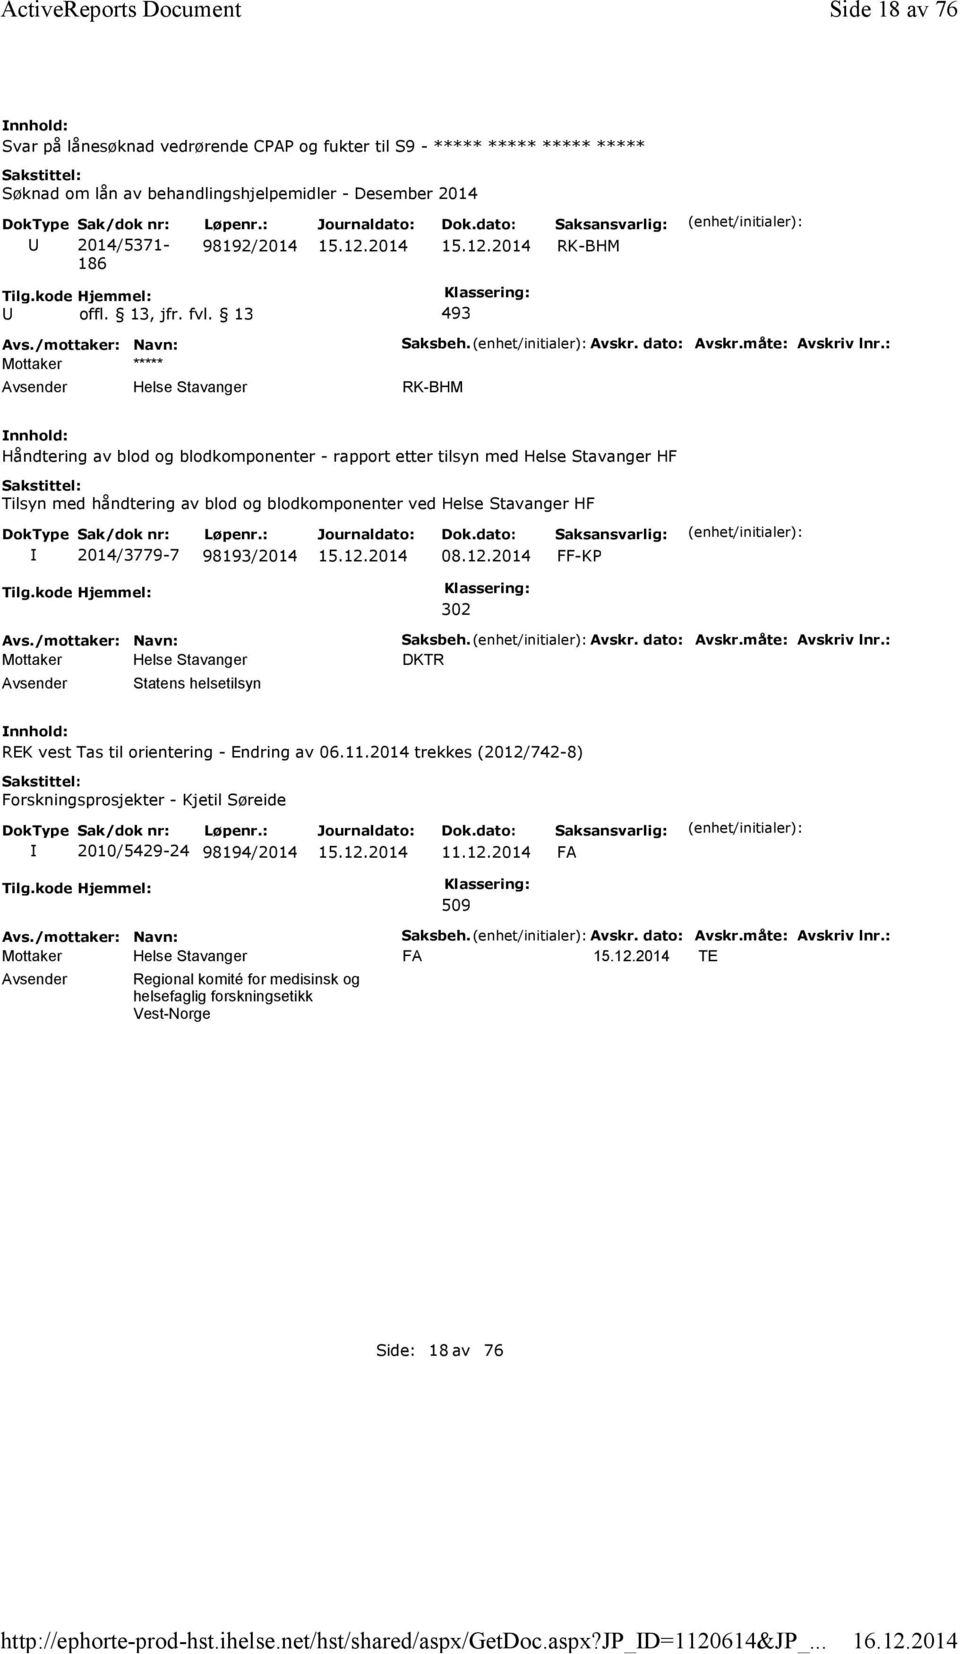 : Håndtering av blod og blodkomponenter - rapport etter tilsyn med Helse Stavanger HF Tilsyn med håndtering av blod og blodkomponenter ved Helse Stavanger HF 2014/3779-7 98193/2014 08.12.